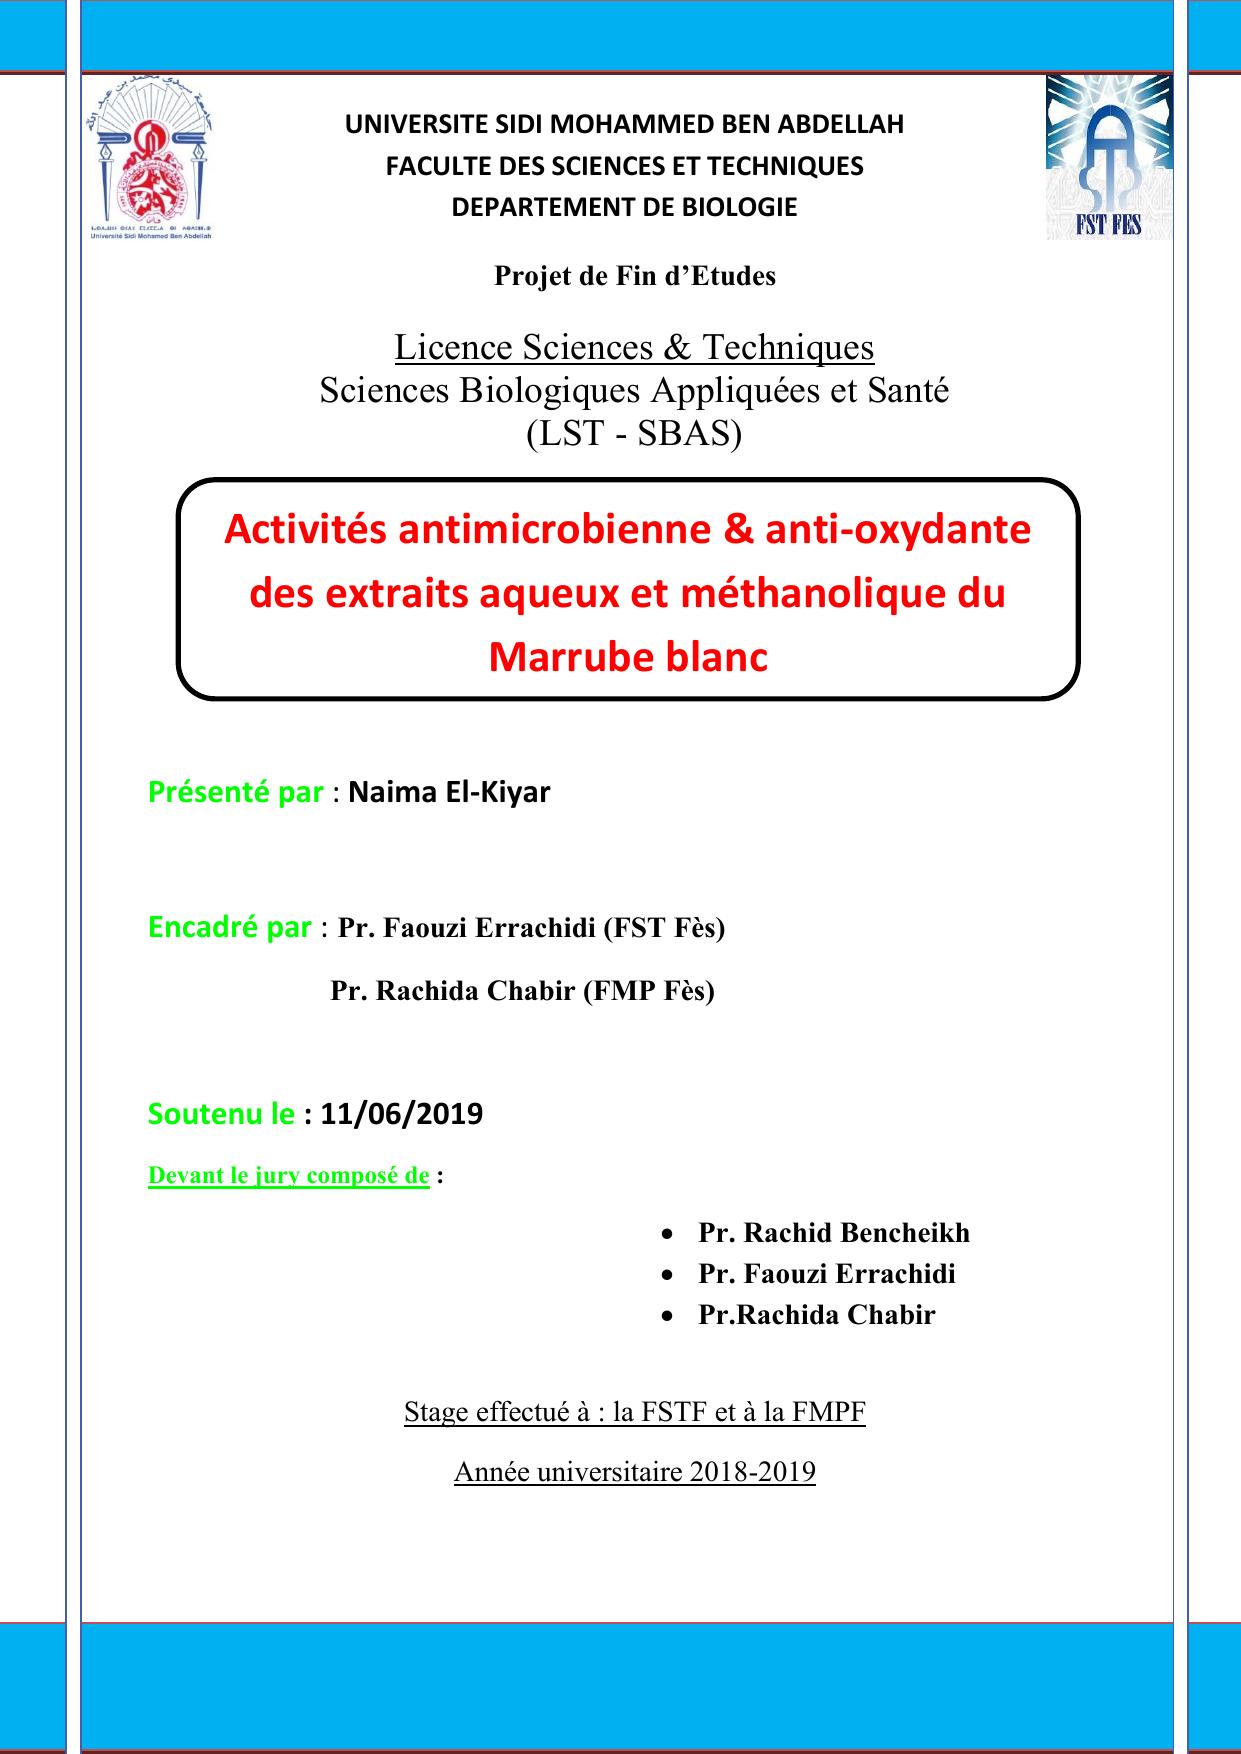 Activités antimicrobienne & anti-oxydante des extraits aqueux et méthanolique du Marrube blanc